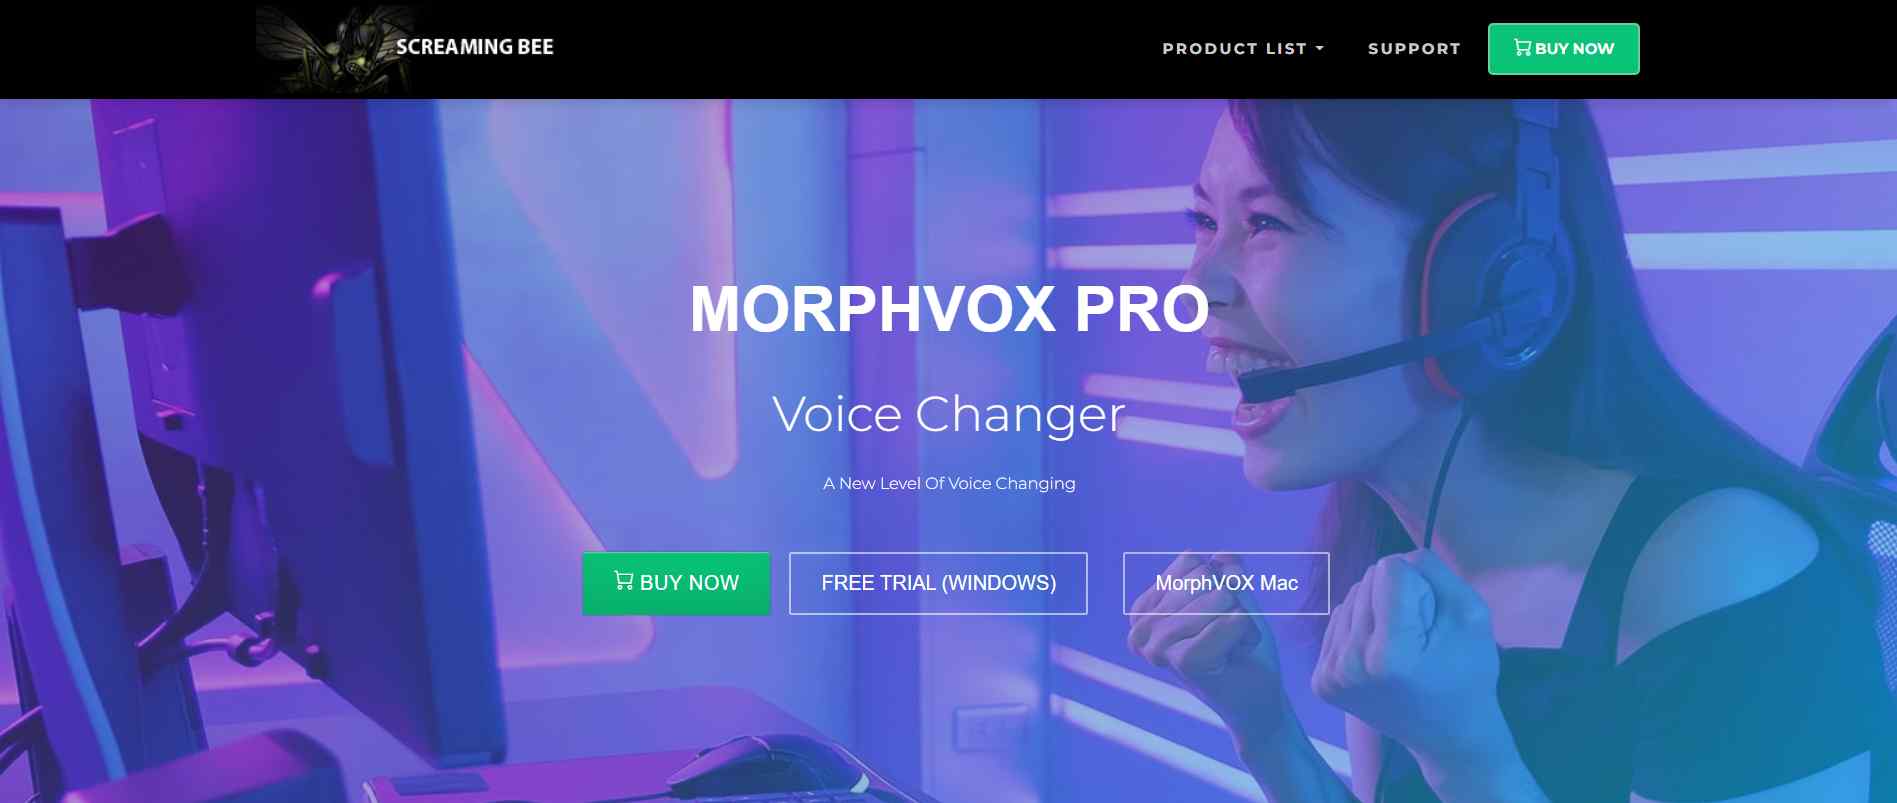 Morph VOX